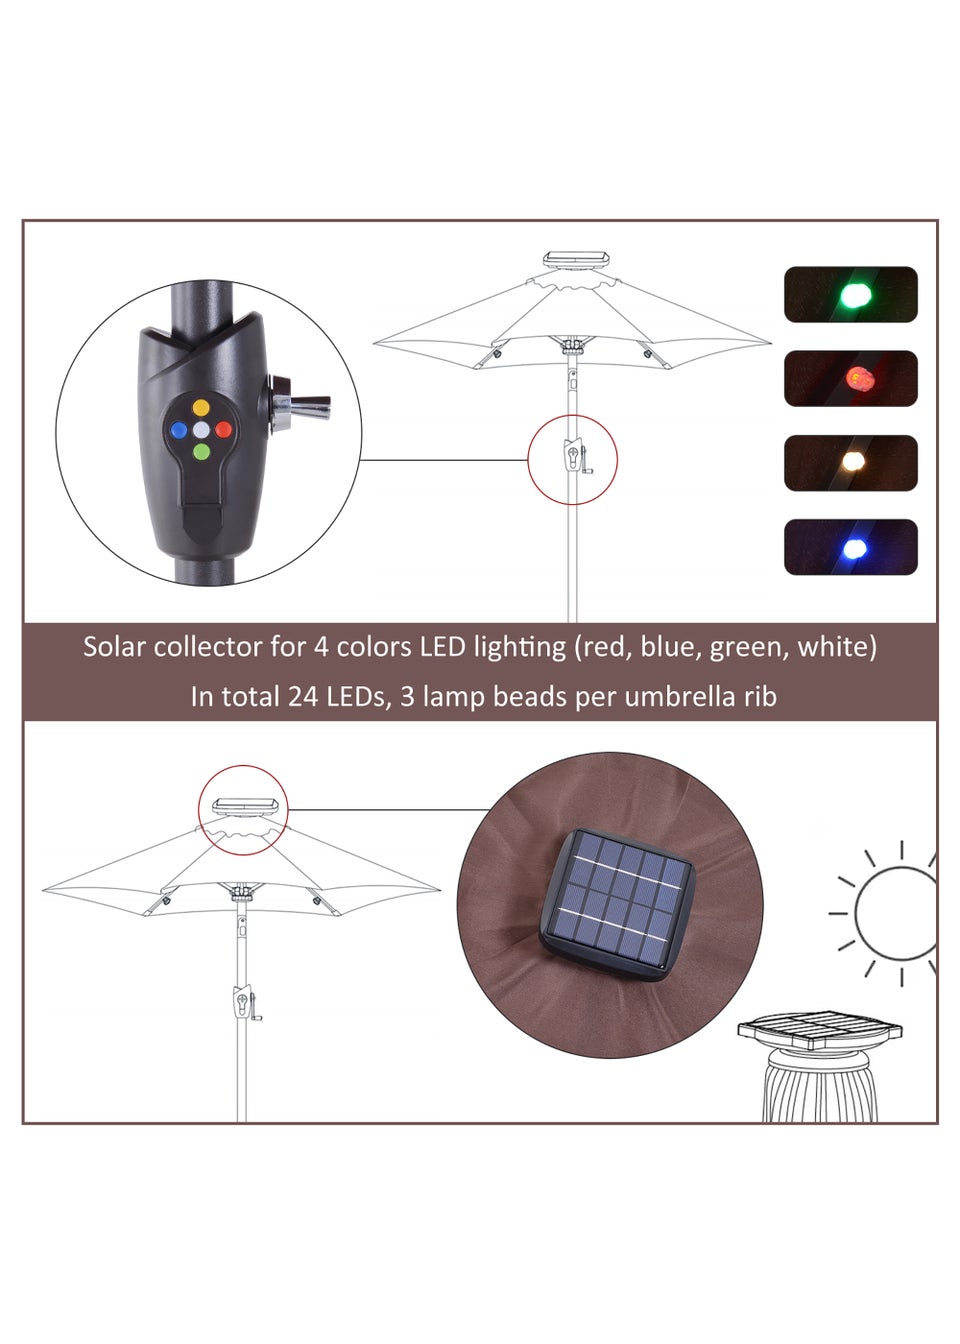 Outsunny LED Solar Parasol (275cm x 233cm)